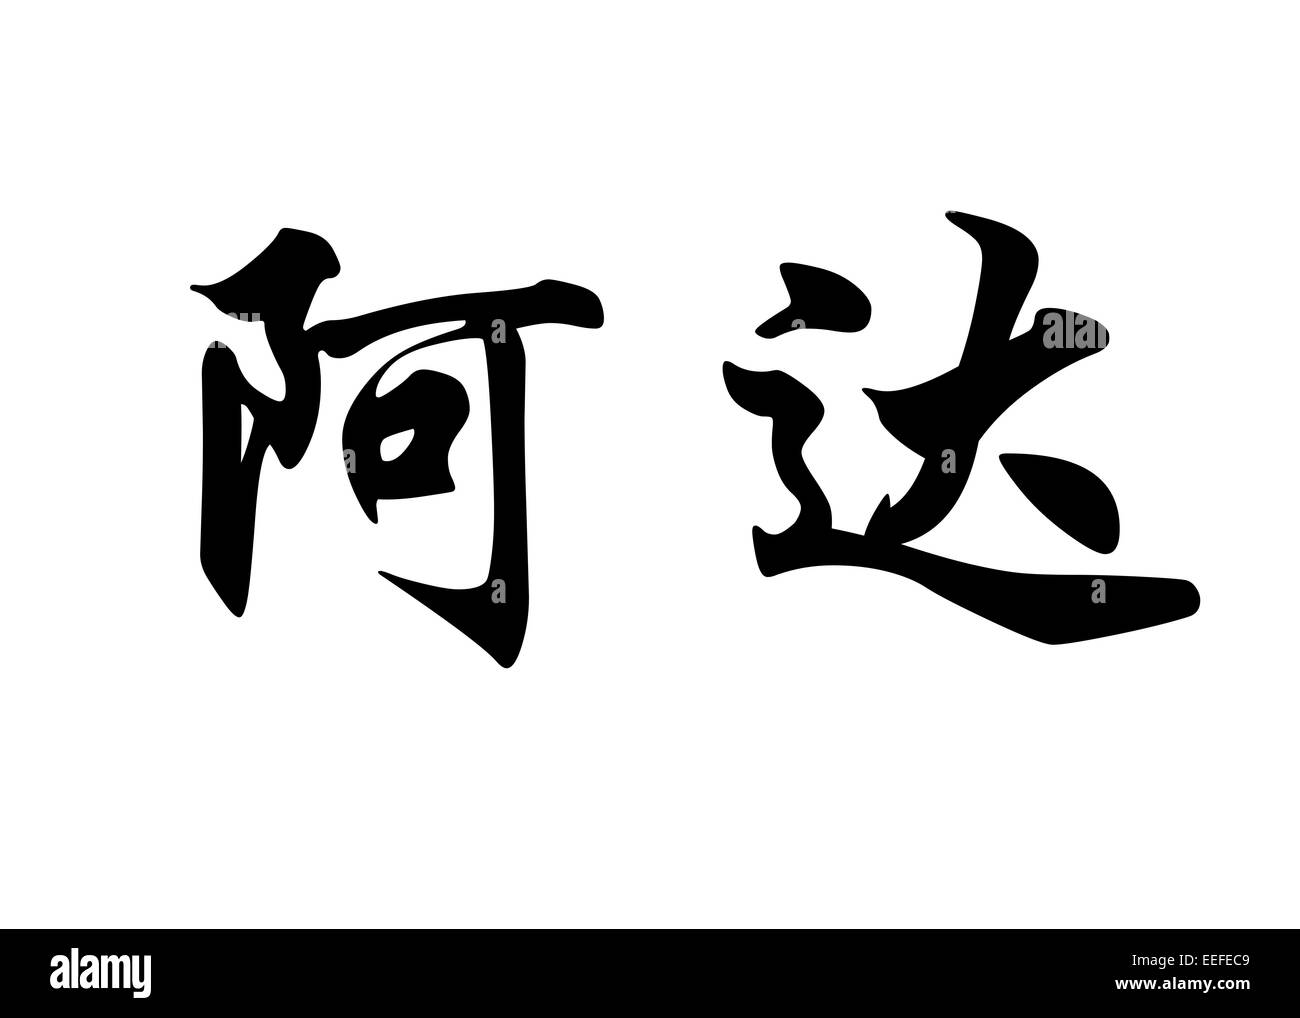 Nom anglais Ada en chinois Calligraphie kanji ou caractères caractères japonais Banque D'Images